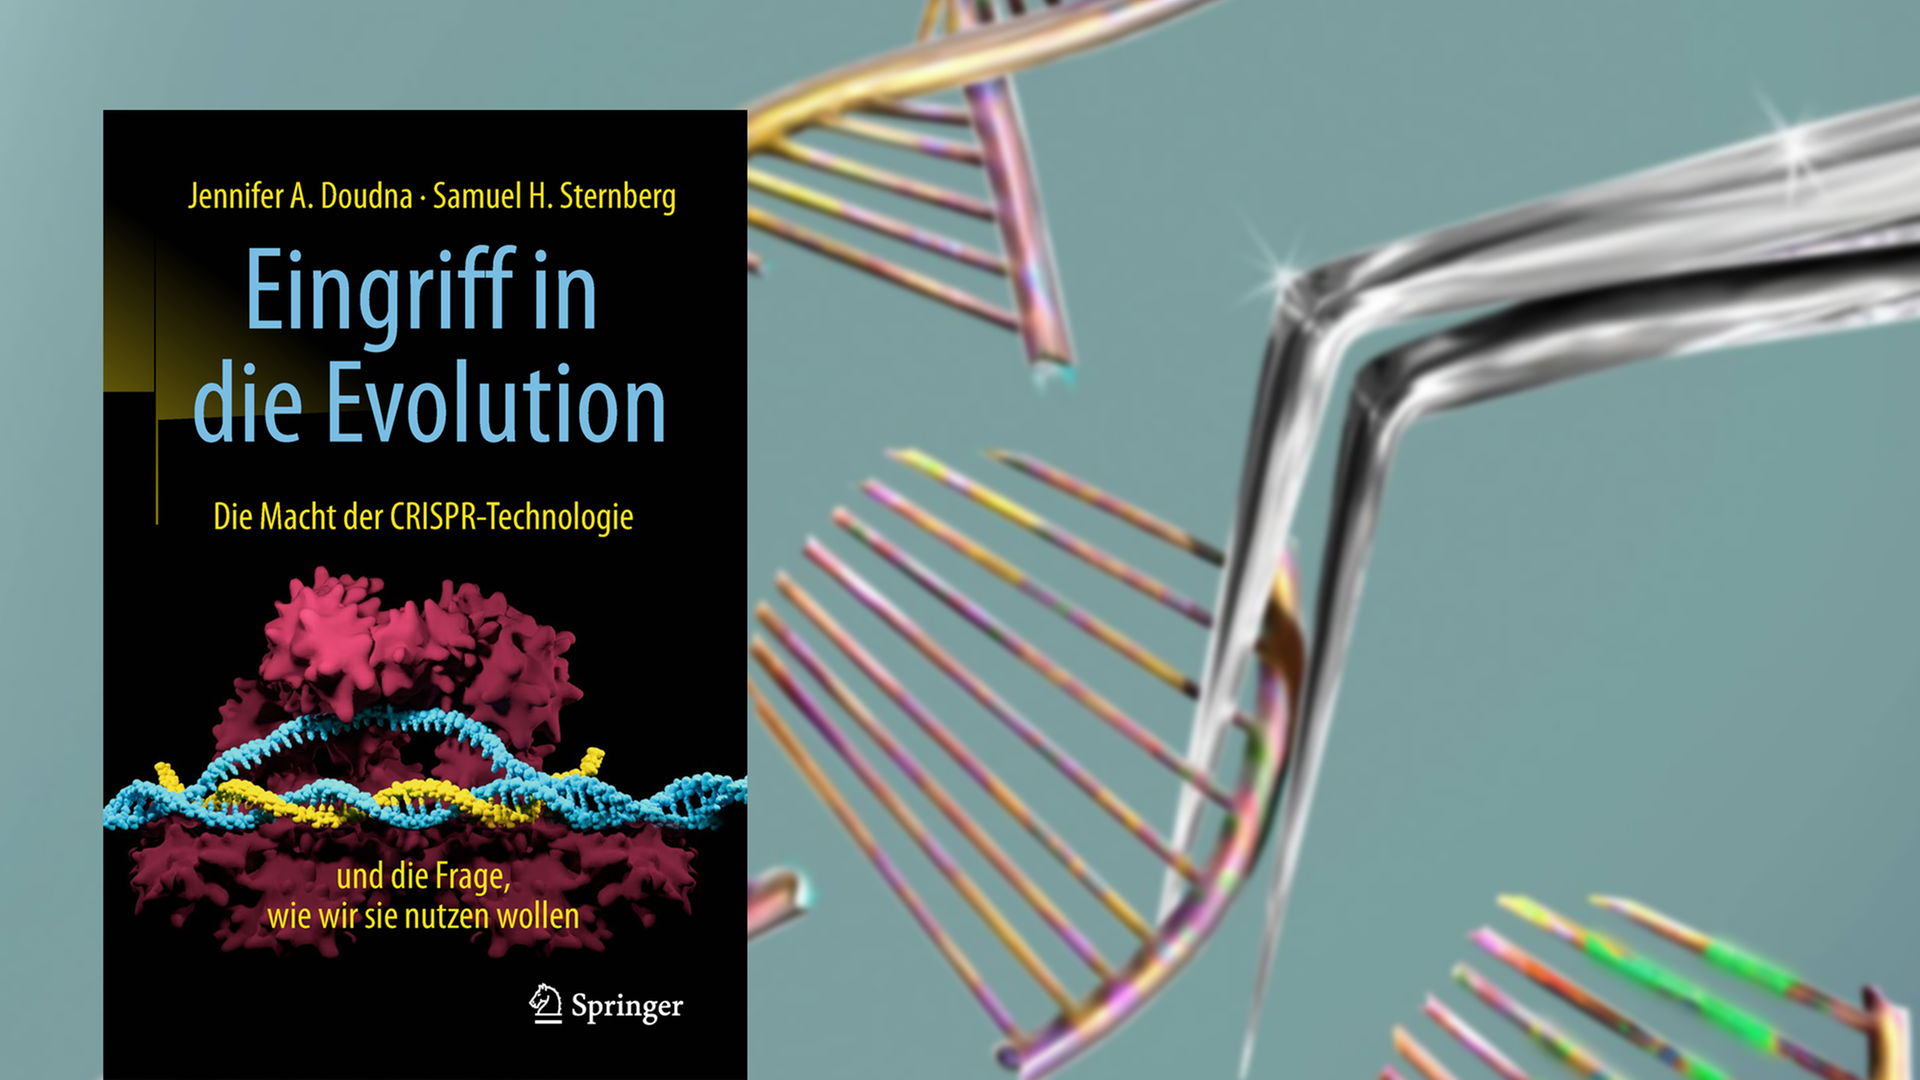 Cover von Jennifer A. Doudna/Samuel H. Sternberg: "Eingriff in die Evolution", im Hintergrund die Illustration einer Schere, die ein DNA Molekül modifiziert